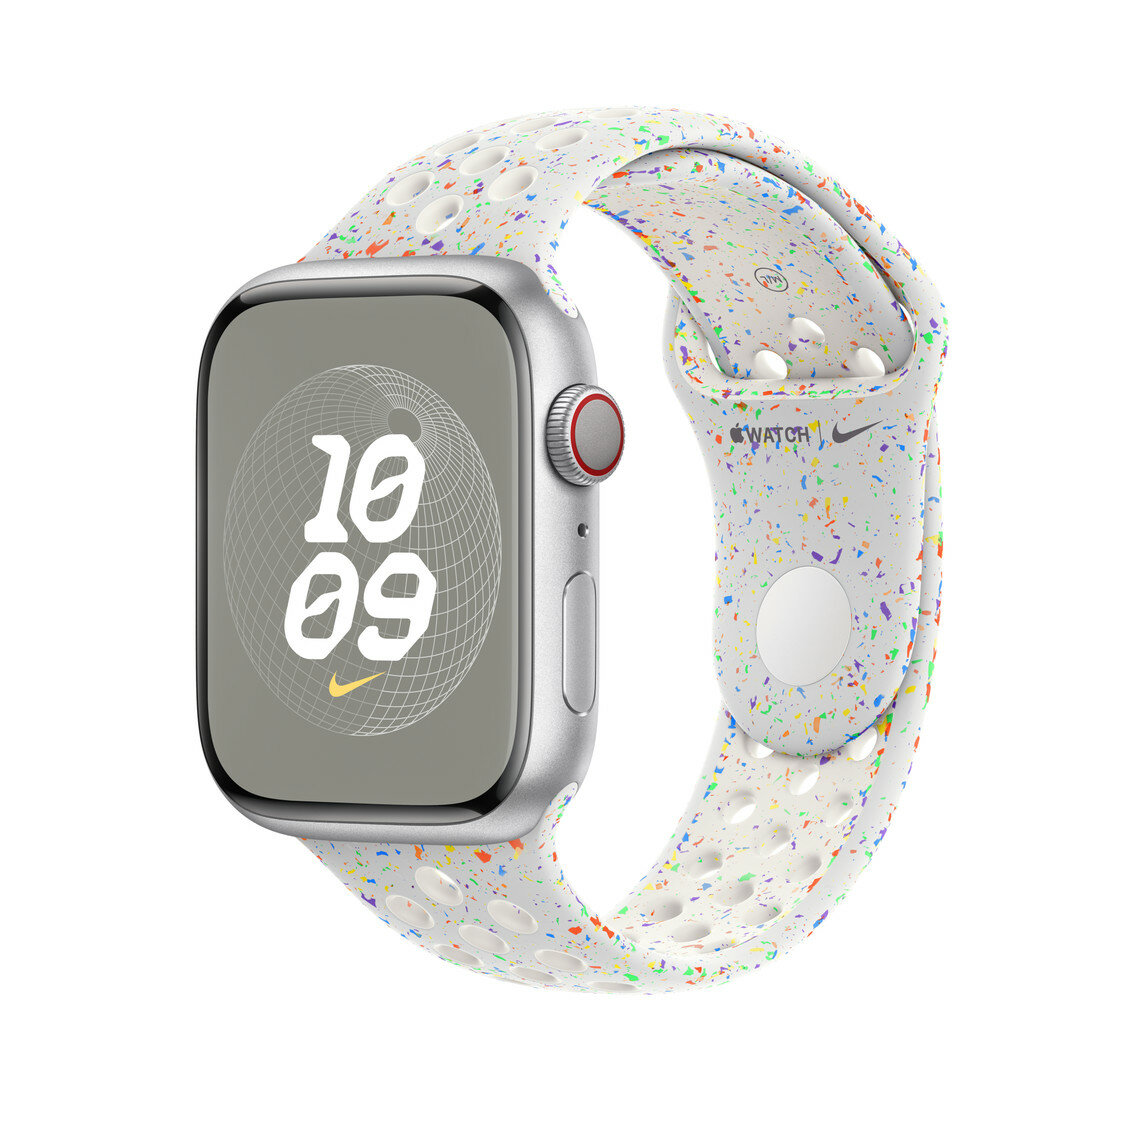 Pasek sportowy Nike Apple MUUK3ZM/A grafika przedstawia smartwatch z założonym paskiem pod skosem